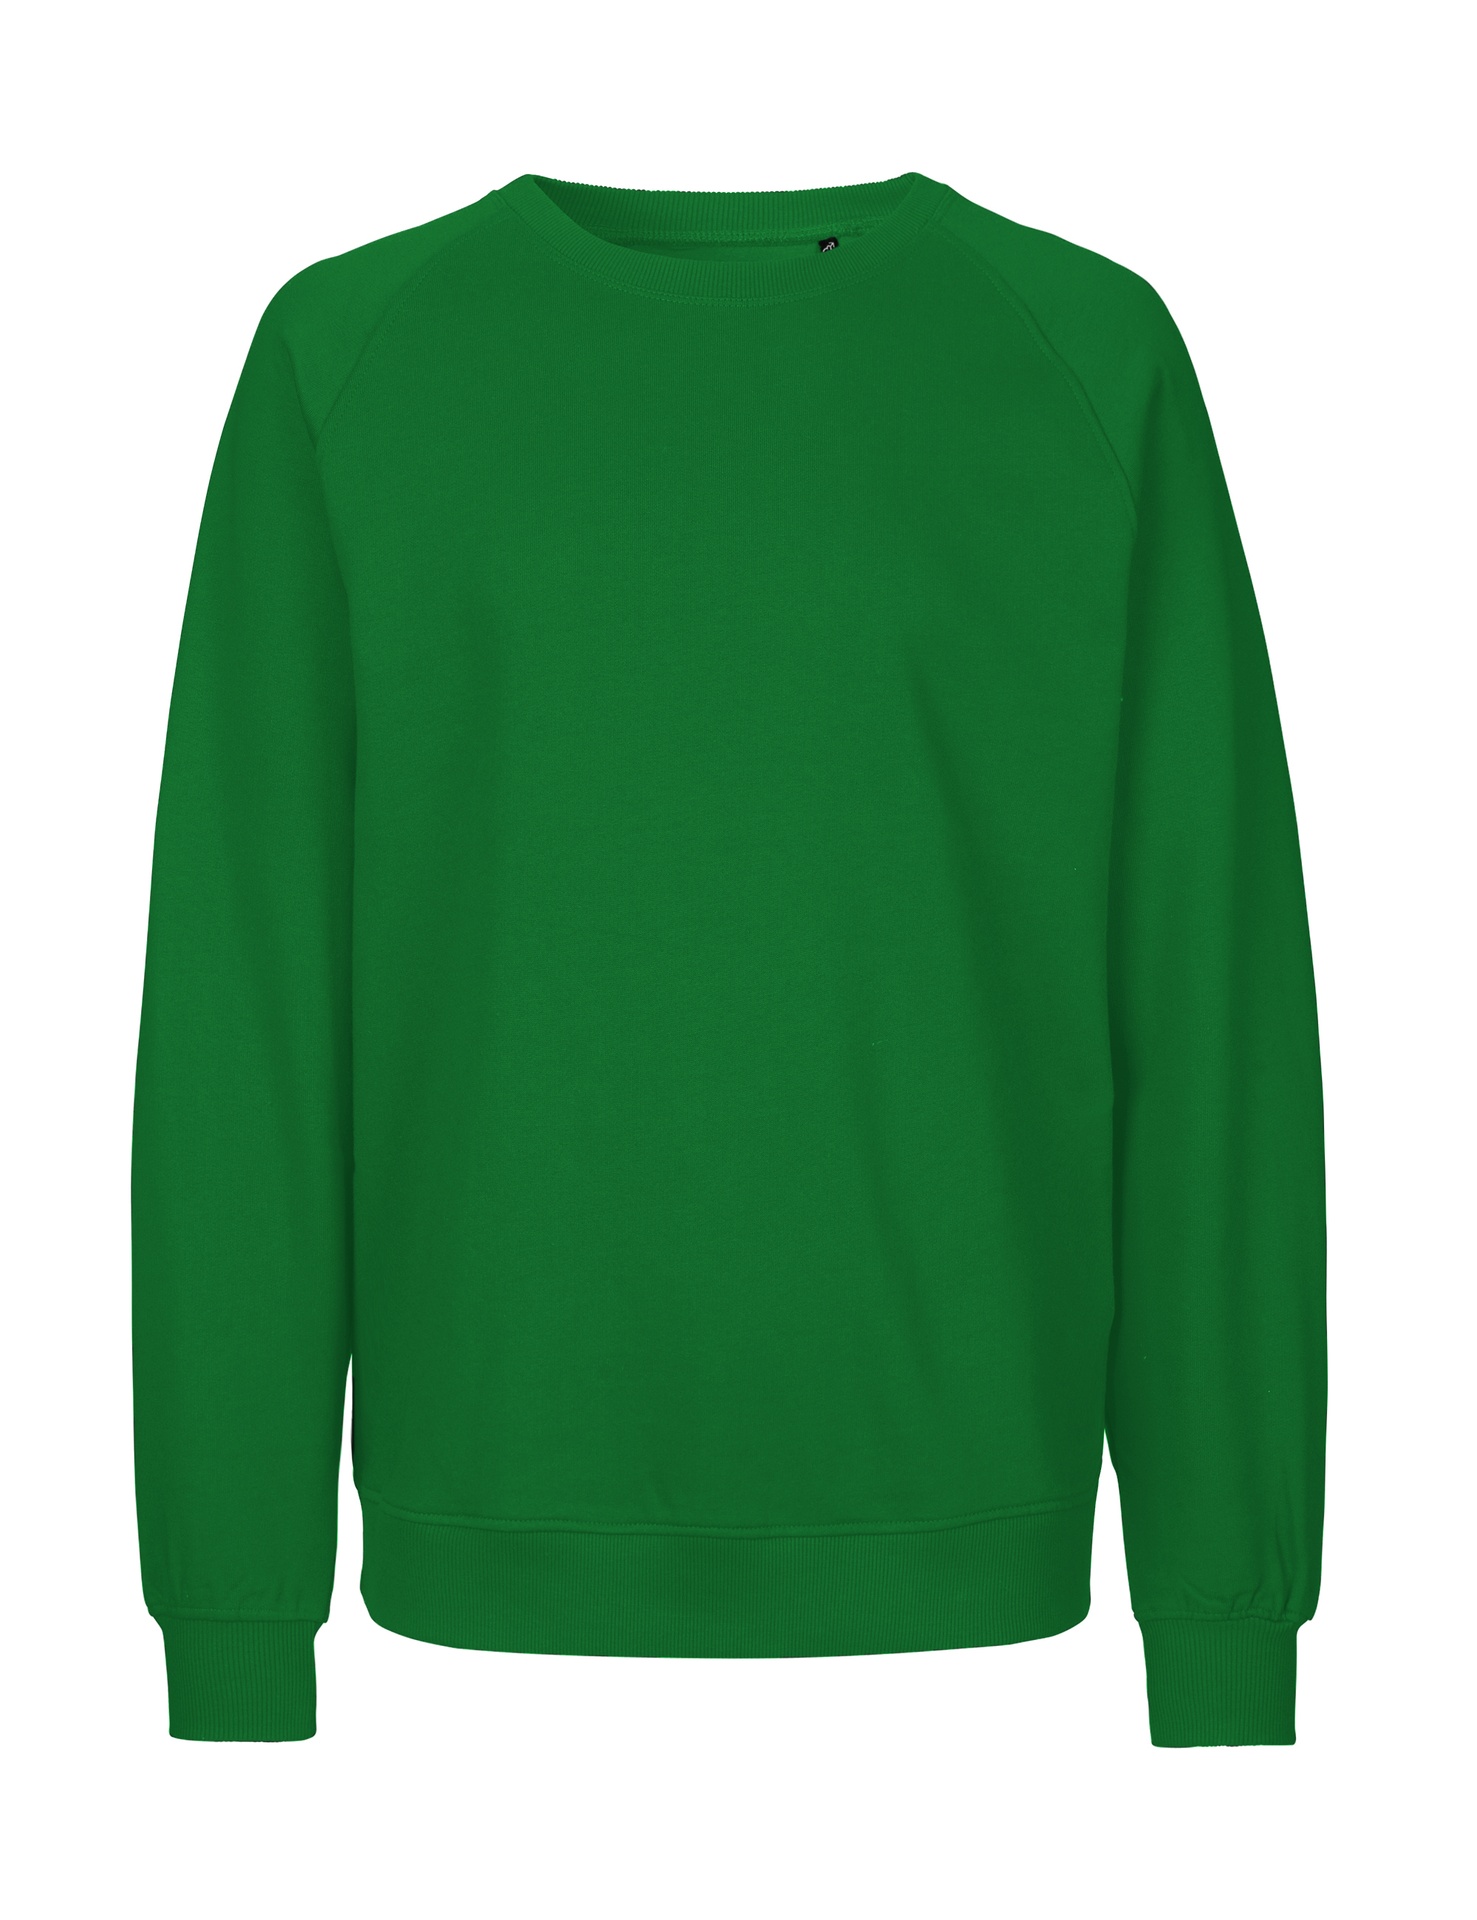 [PR/02878] Unisex Sweatshirt (Green 67, S)